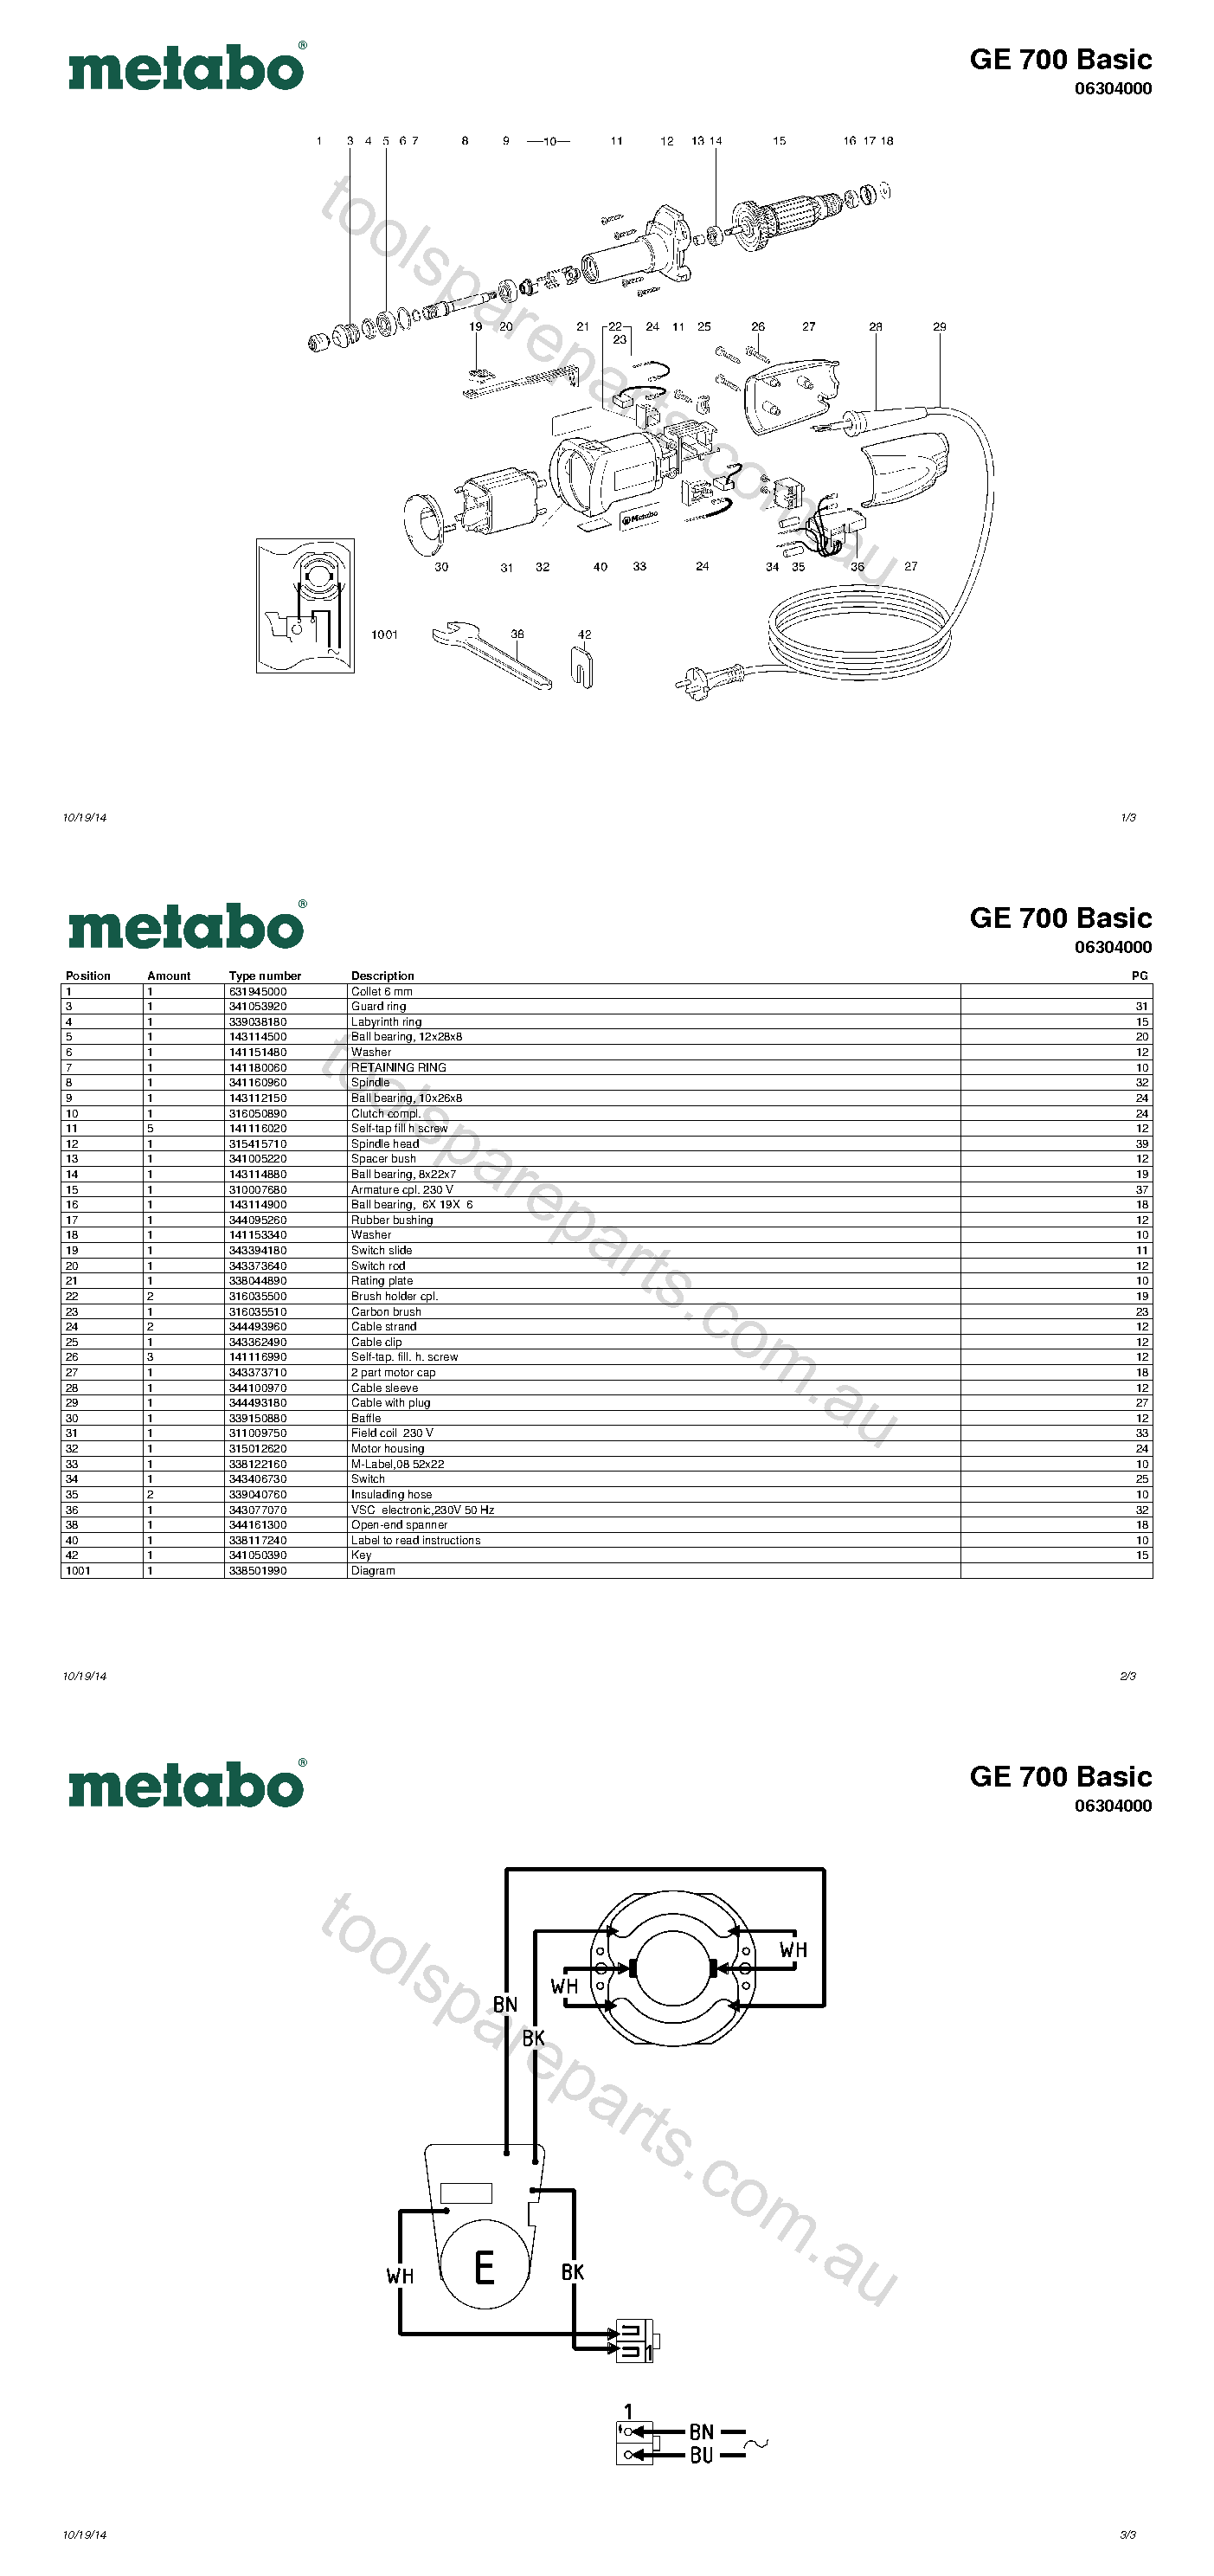 Metabo GE 700 Basic 06304000  Diagram 1